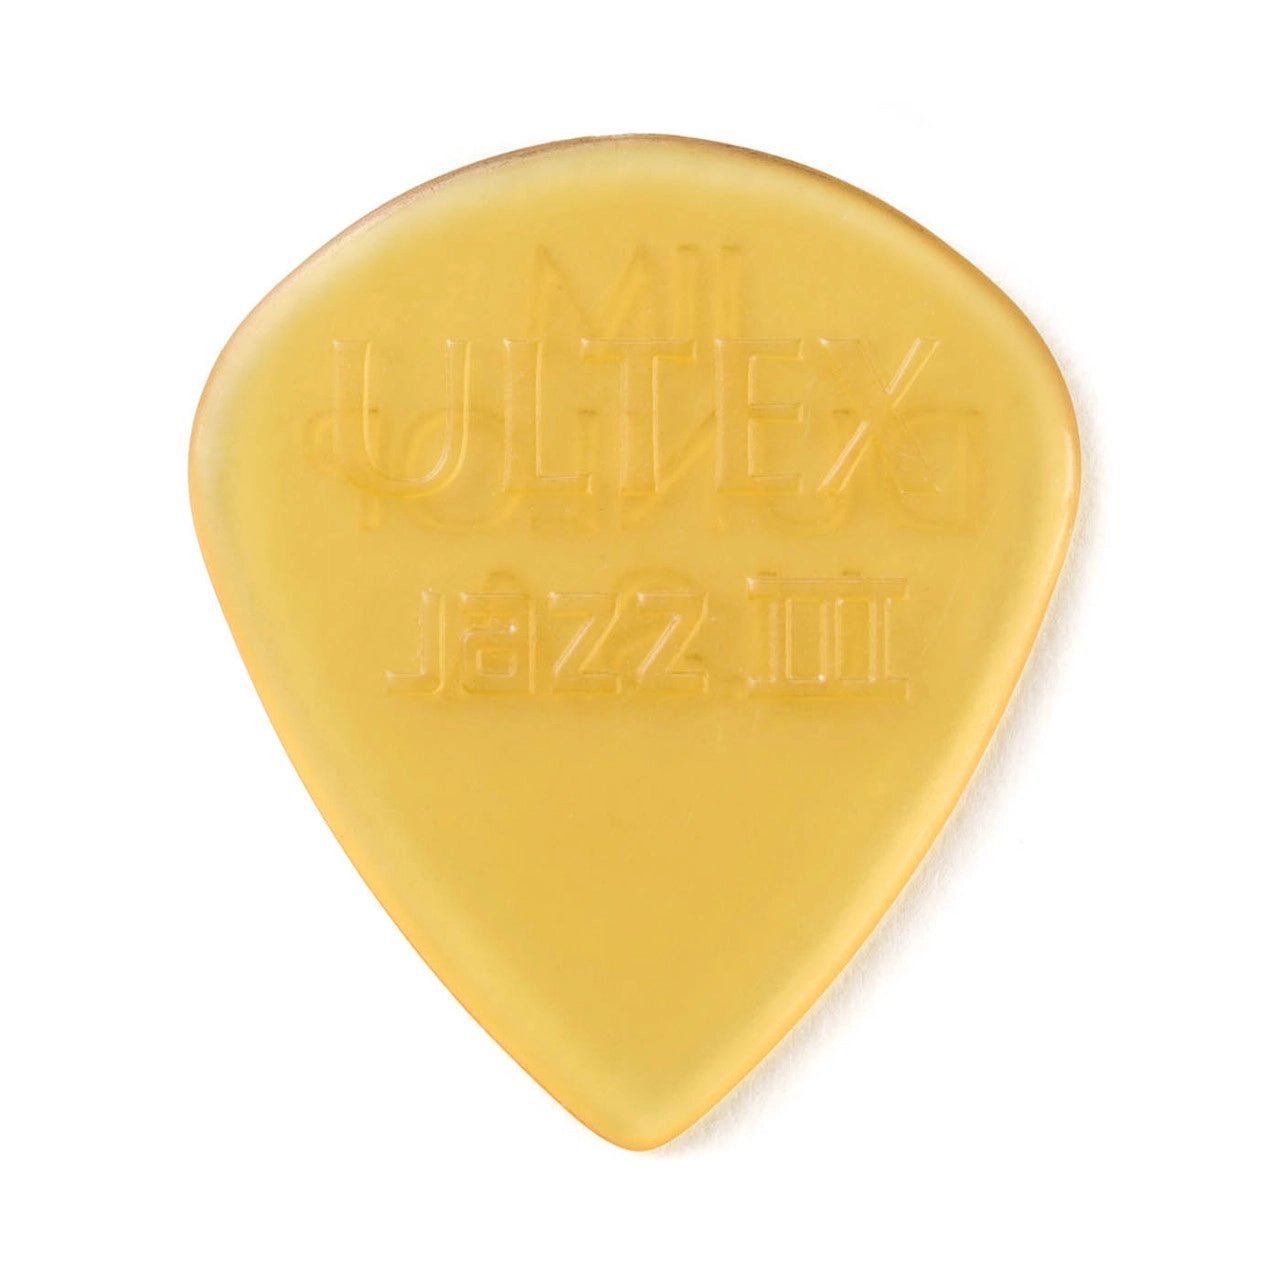 Dunlop Ultex Jazz III Guitar Pick 1.38mm